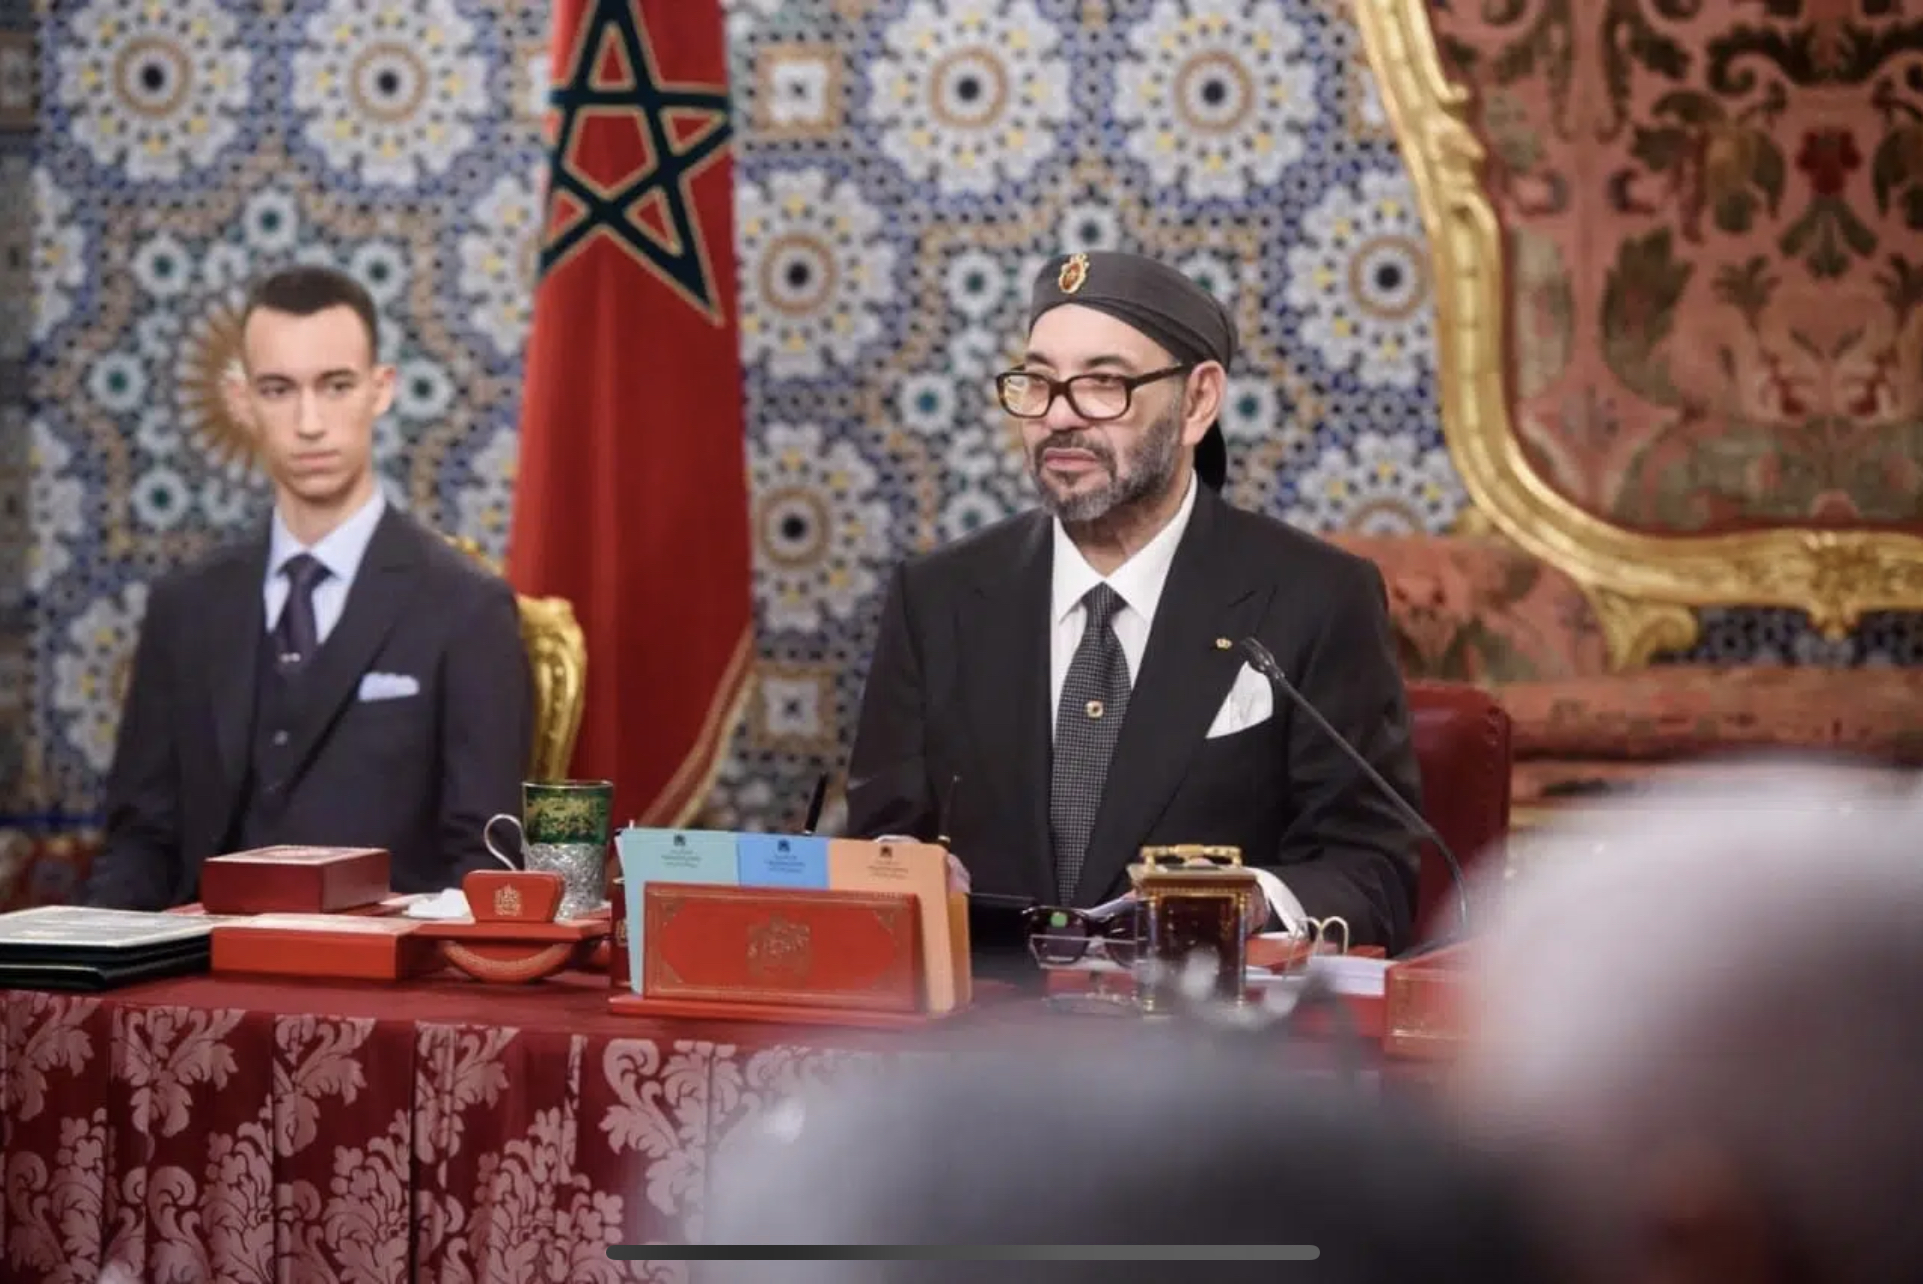 جلالة الملك محمد السادس يرأس مجلسا وزاريا لعرض توجهات مشروع مالية 2023